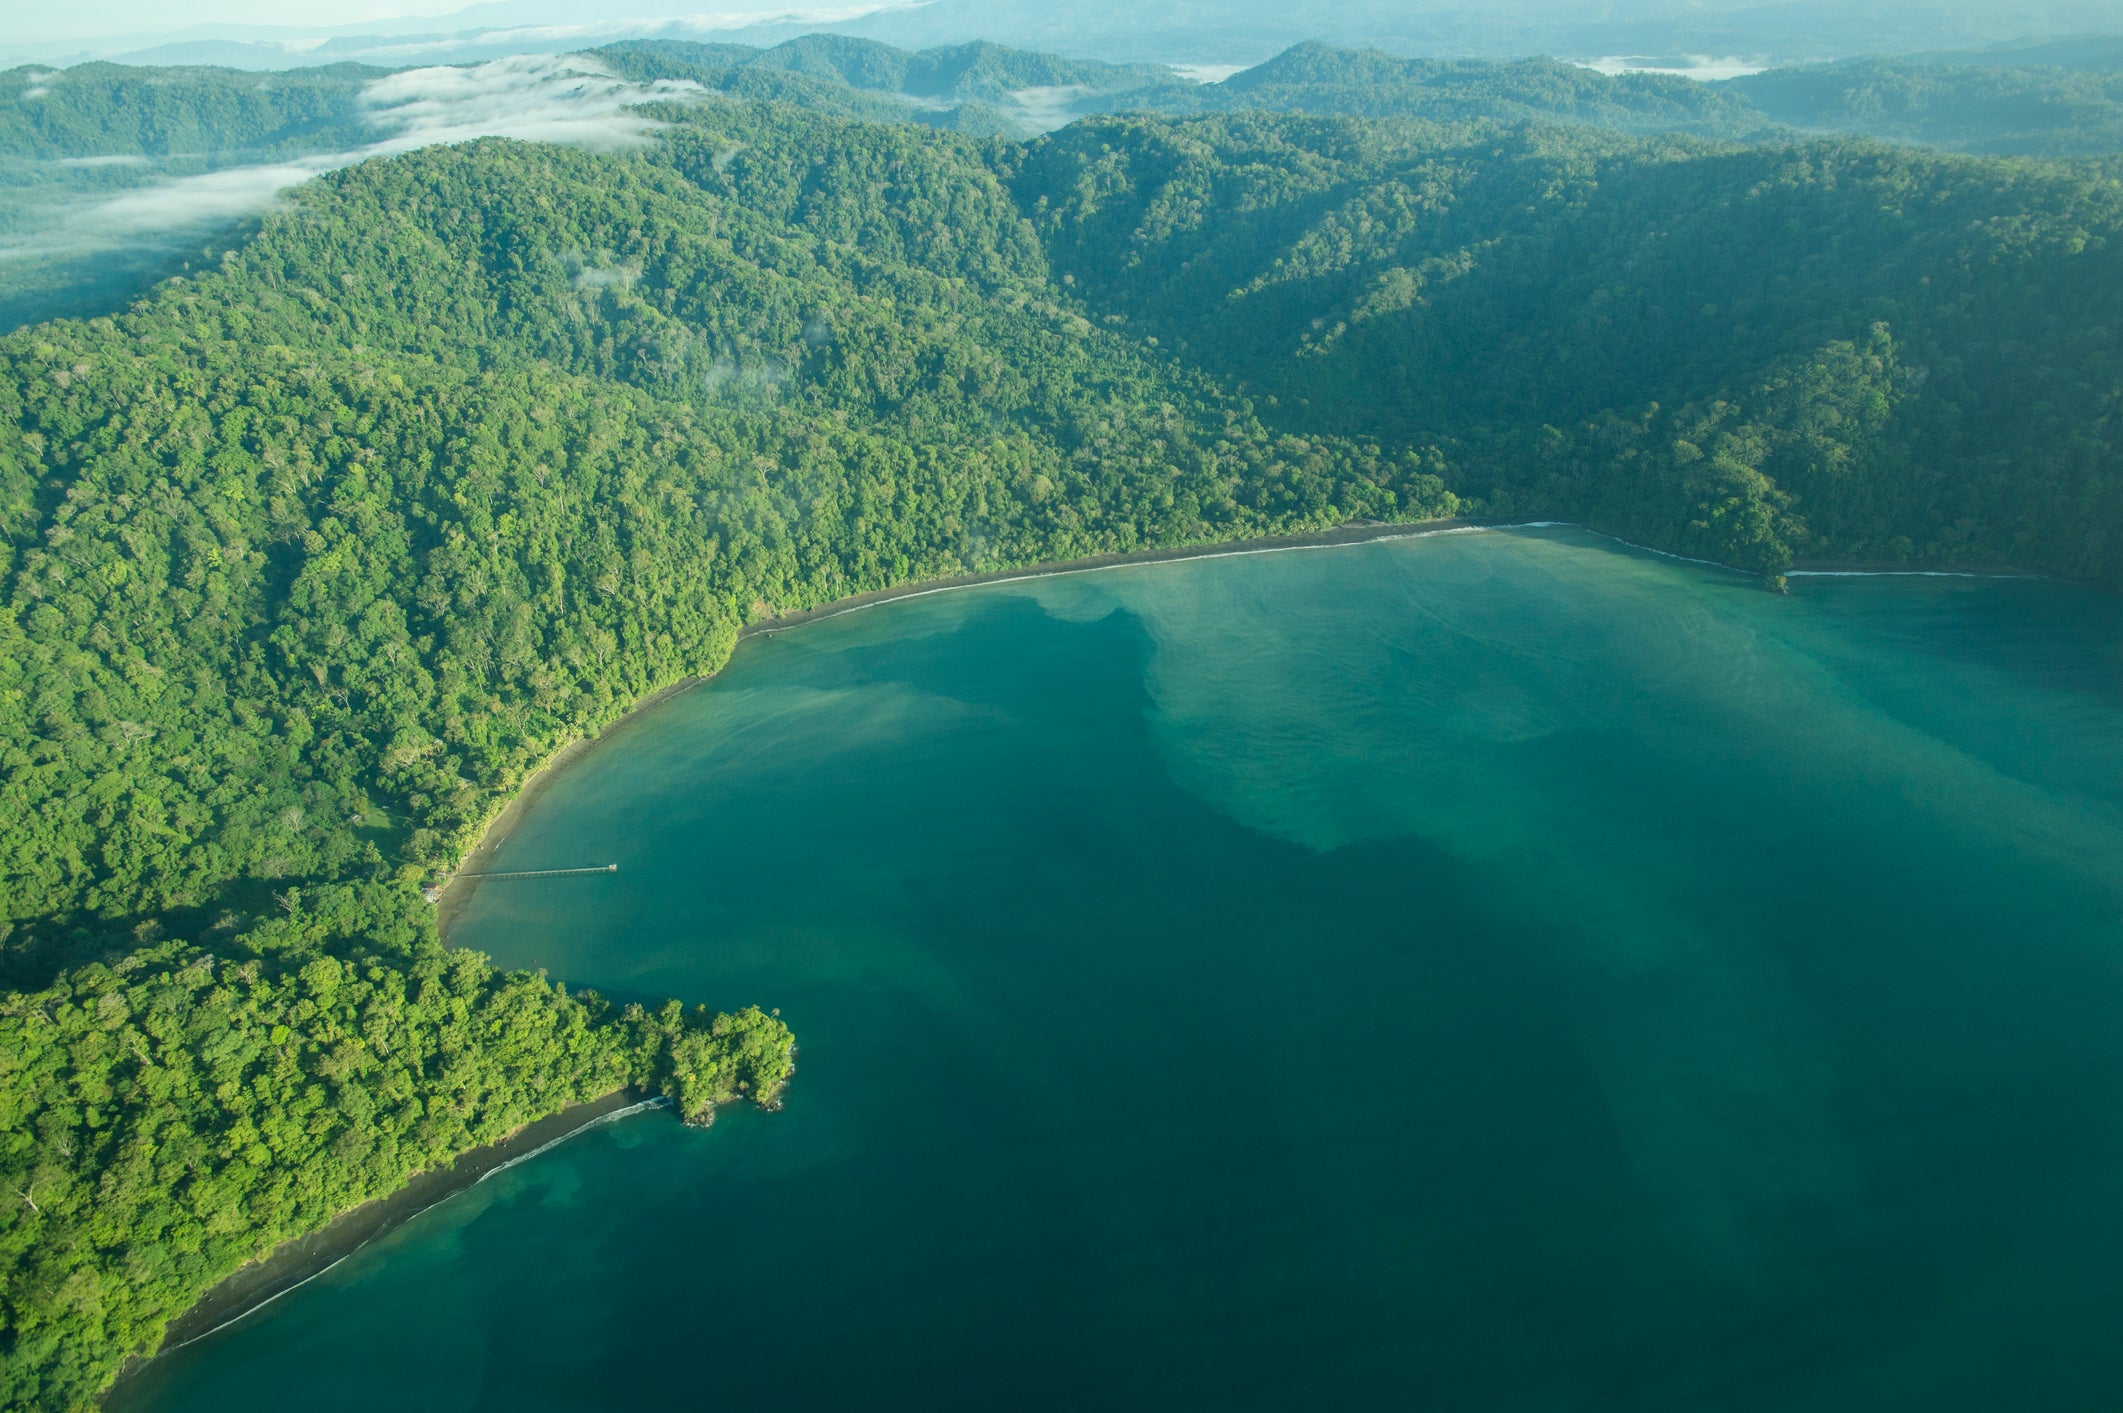 Golfo Dulce, Costa Rica